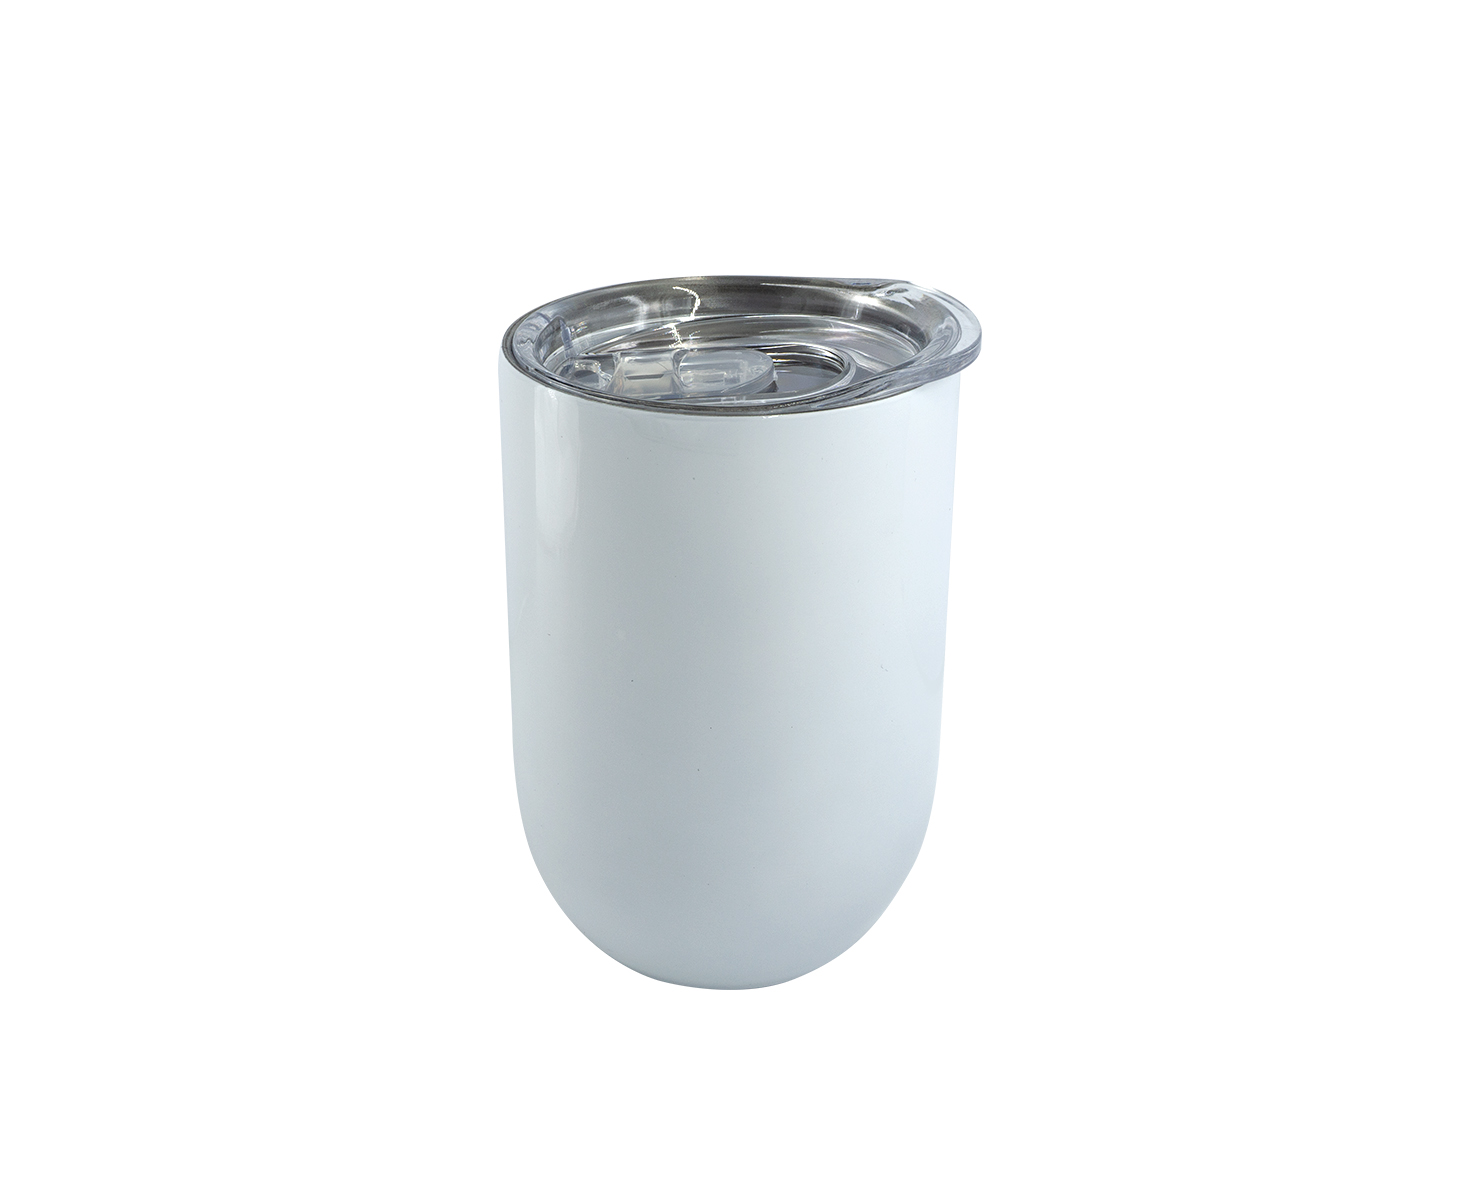 VASO TERMICO MERIDA 350ML, Vaso térmico de 350 ml para sublimar con tapa trasparente de plástico y clip de seguridad.